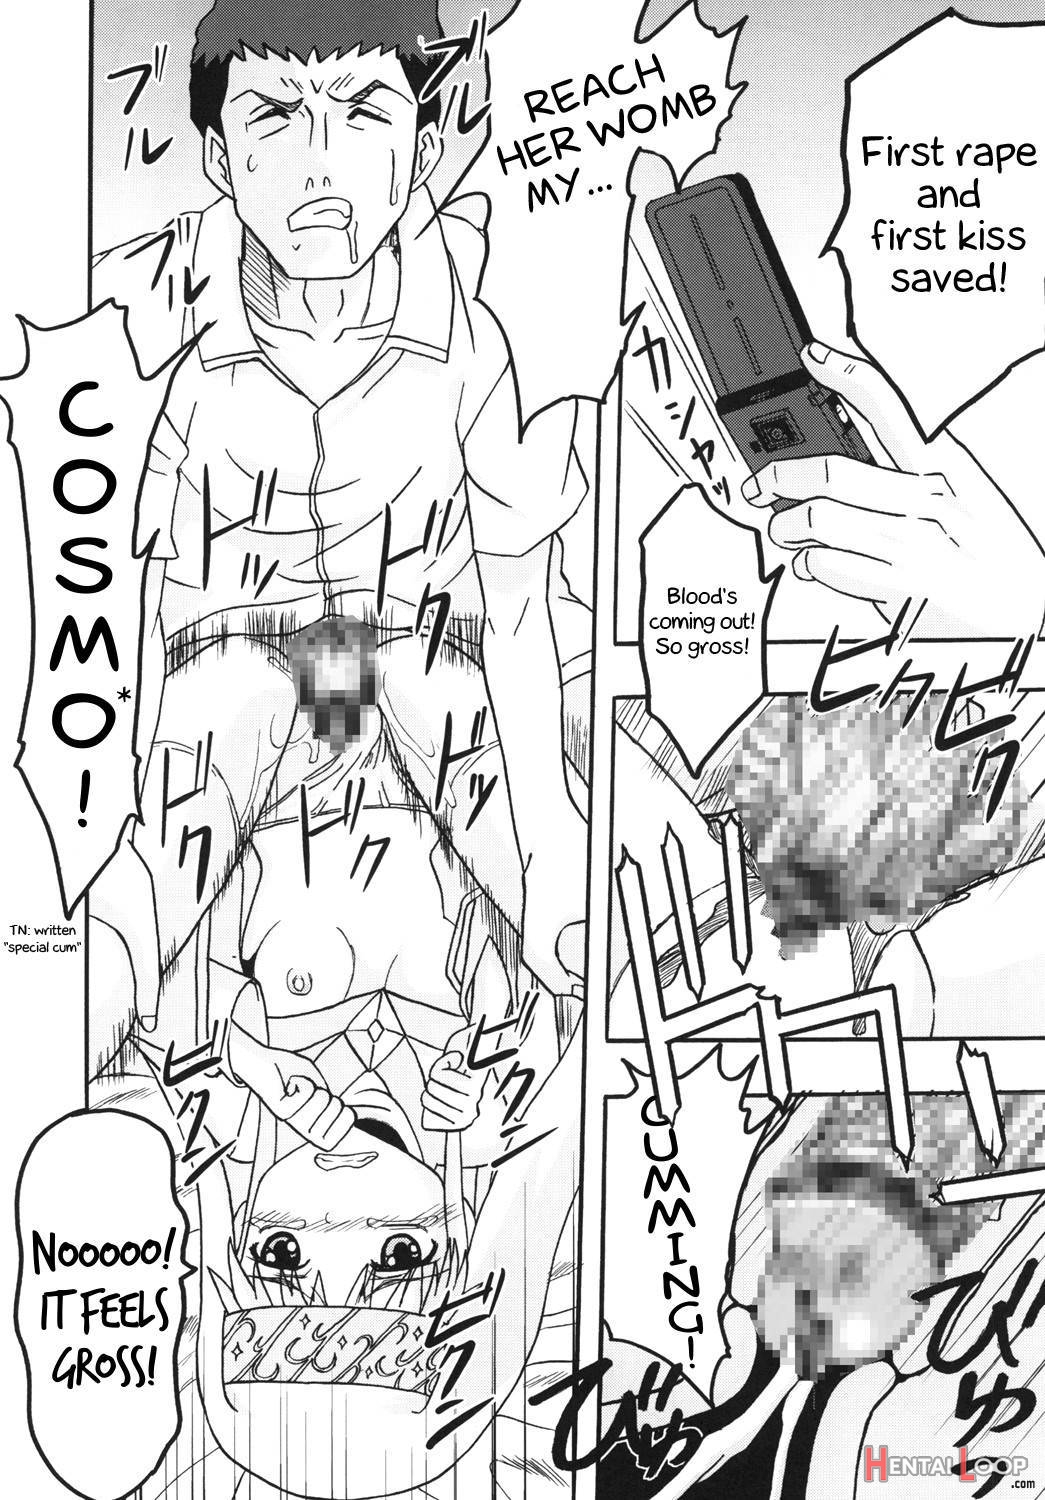 Toaru Otaku no Index #1 page 9